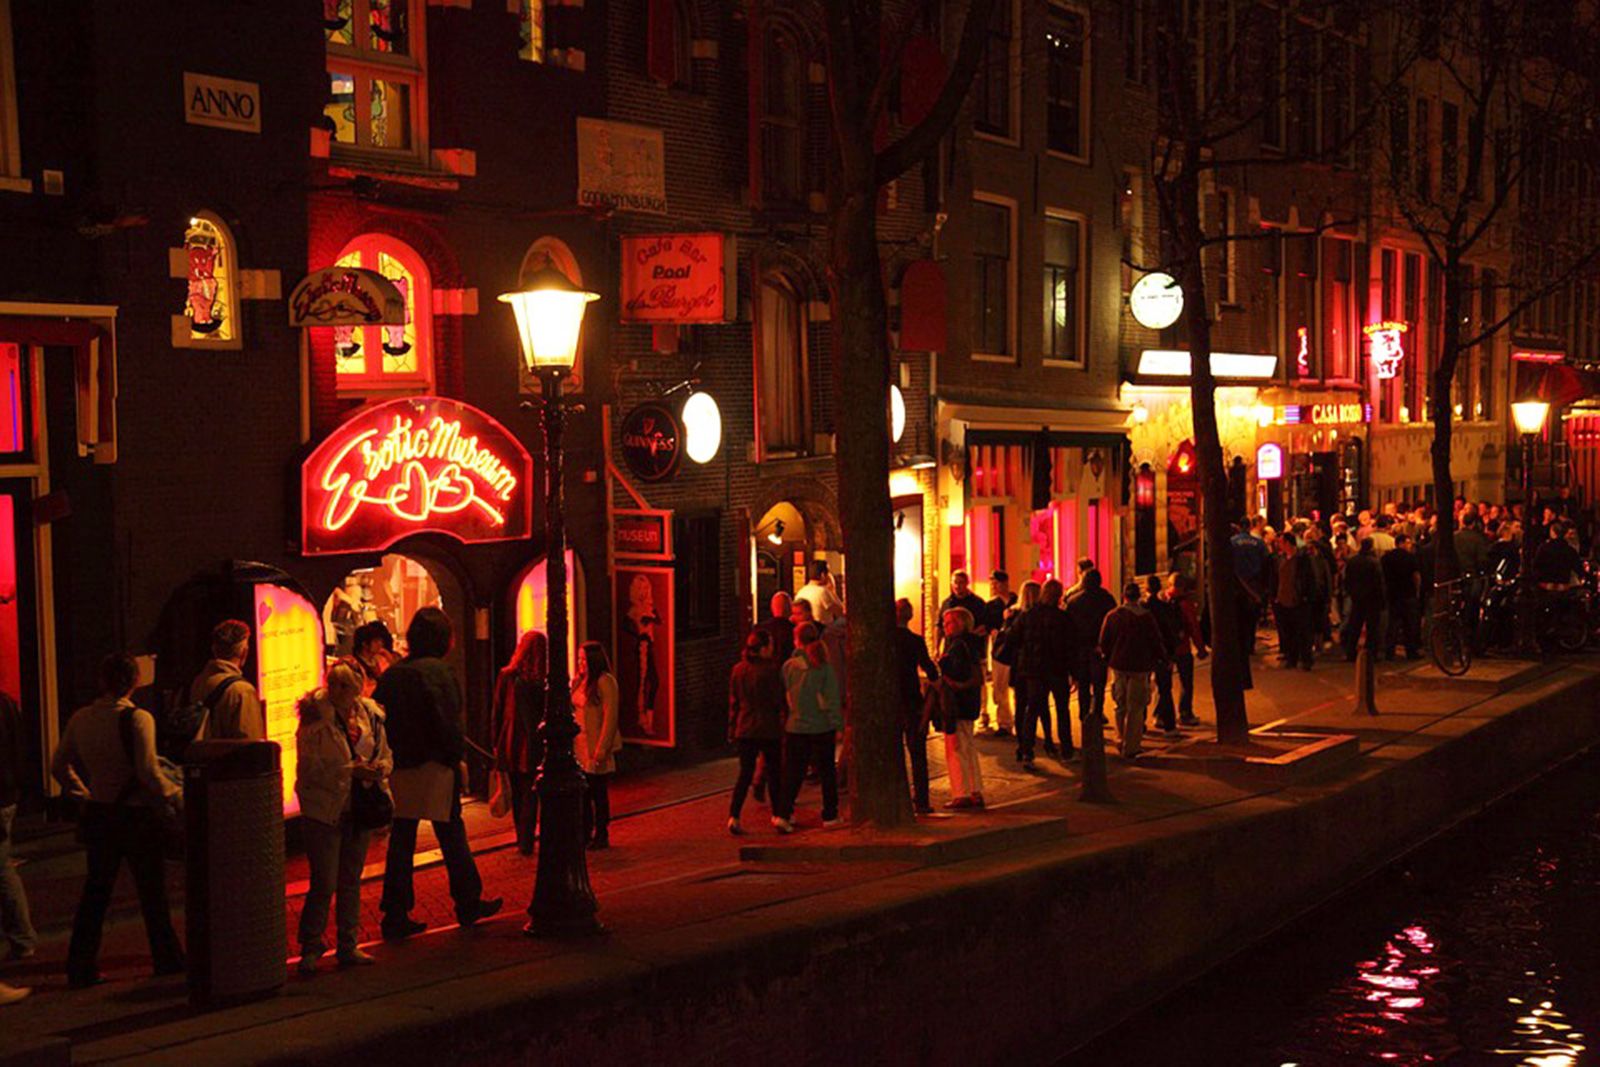 vægt fredelig Bunke af Let Amsterdam Red Light District tours continue, group says | CNN